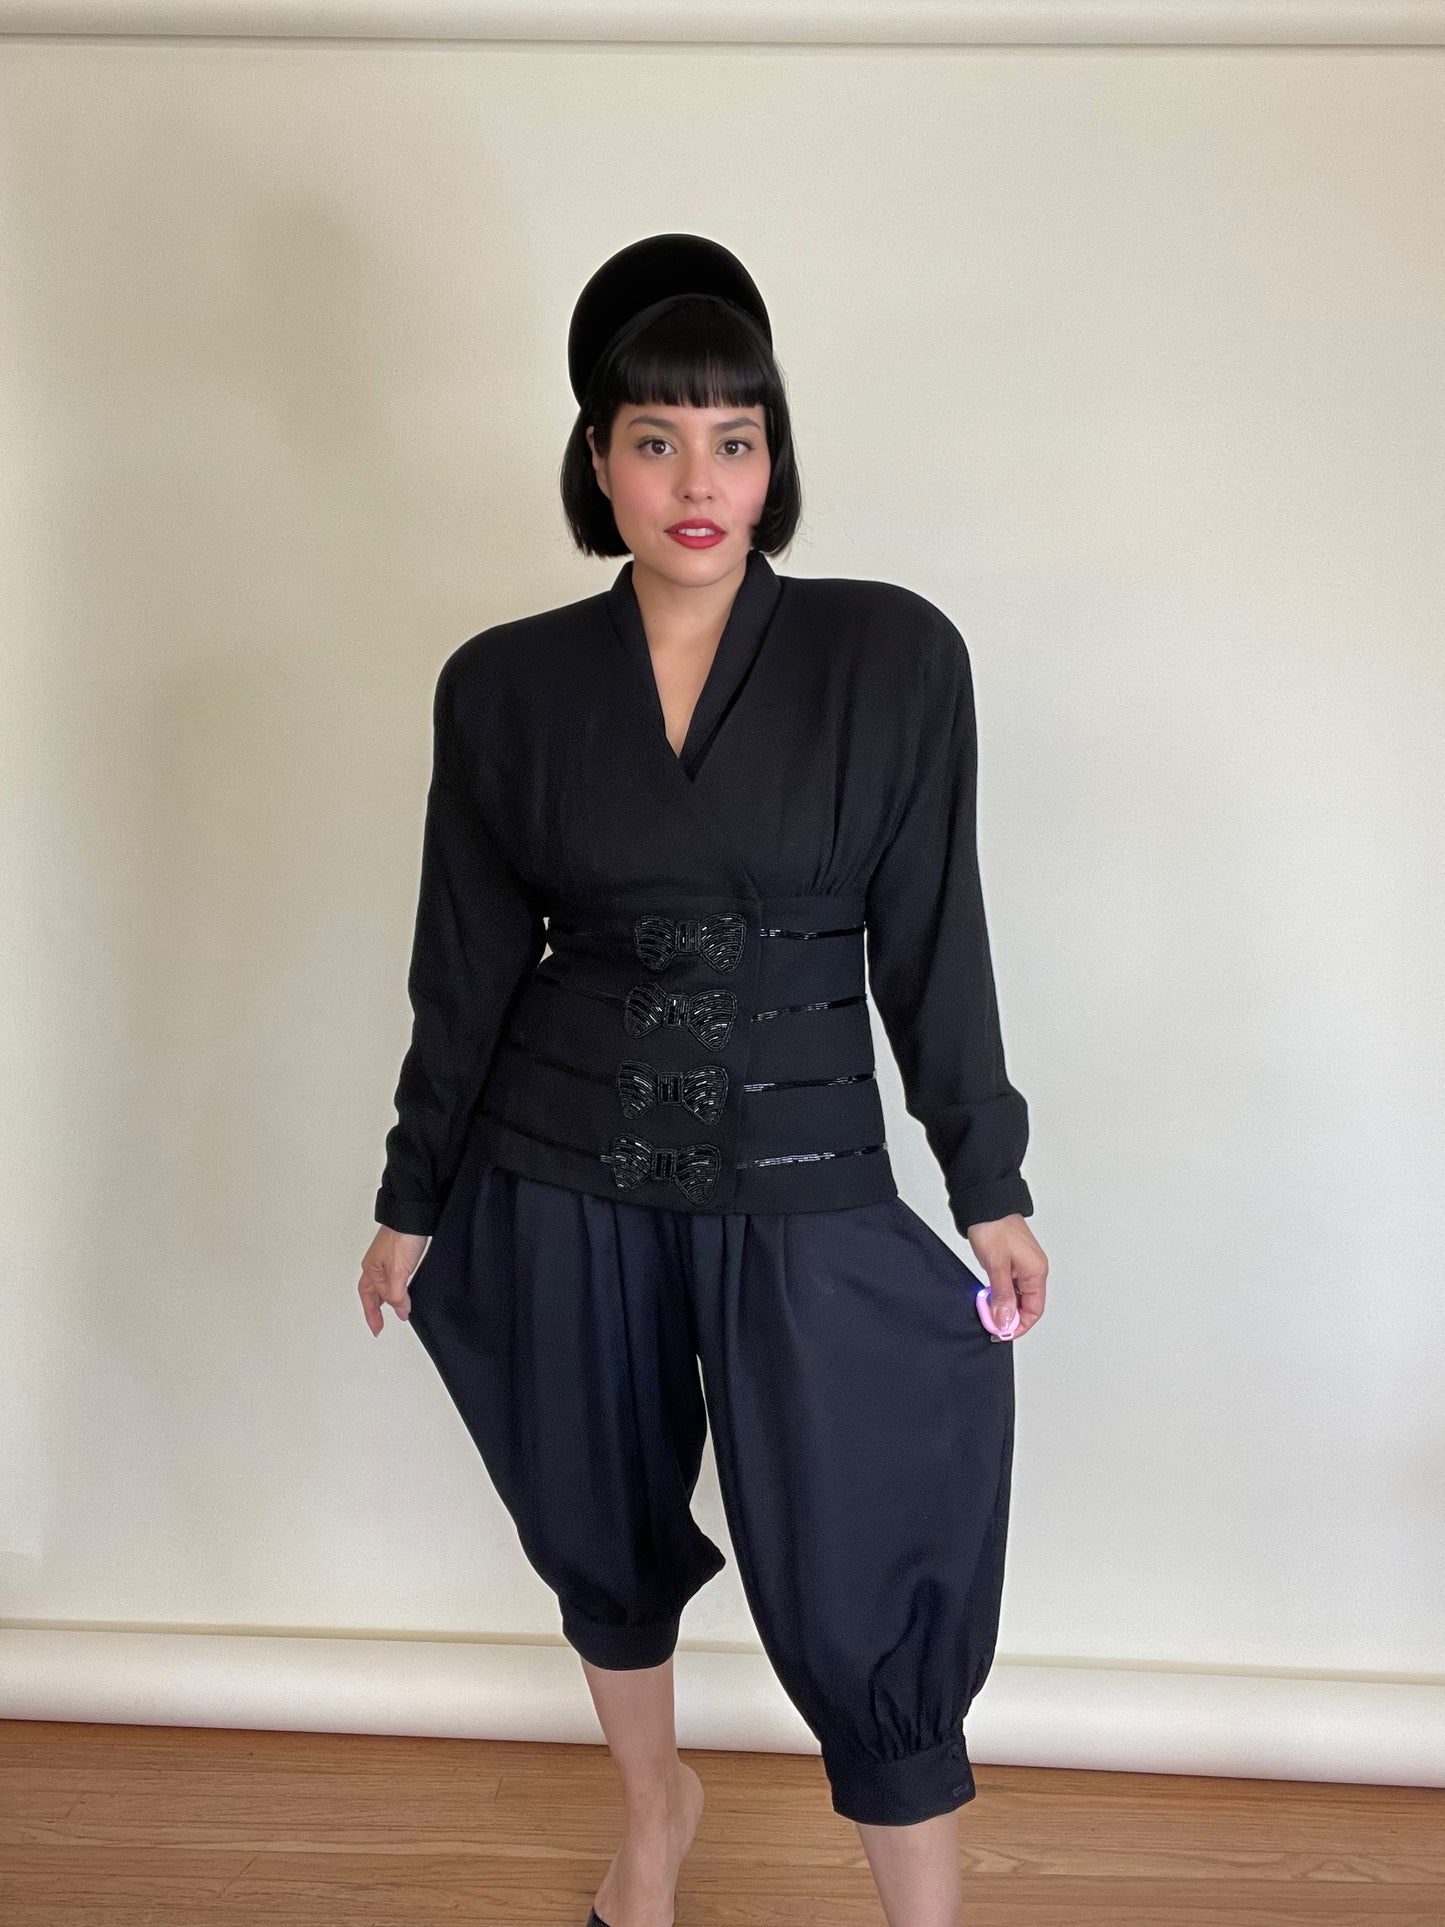 Vintage 80s "C'est Simone" Black Blazer Top with Beaded Bow Appliques Best Fits Sizes S-L